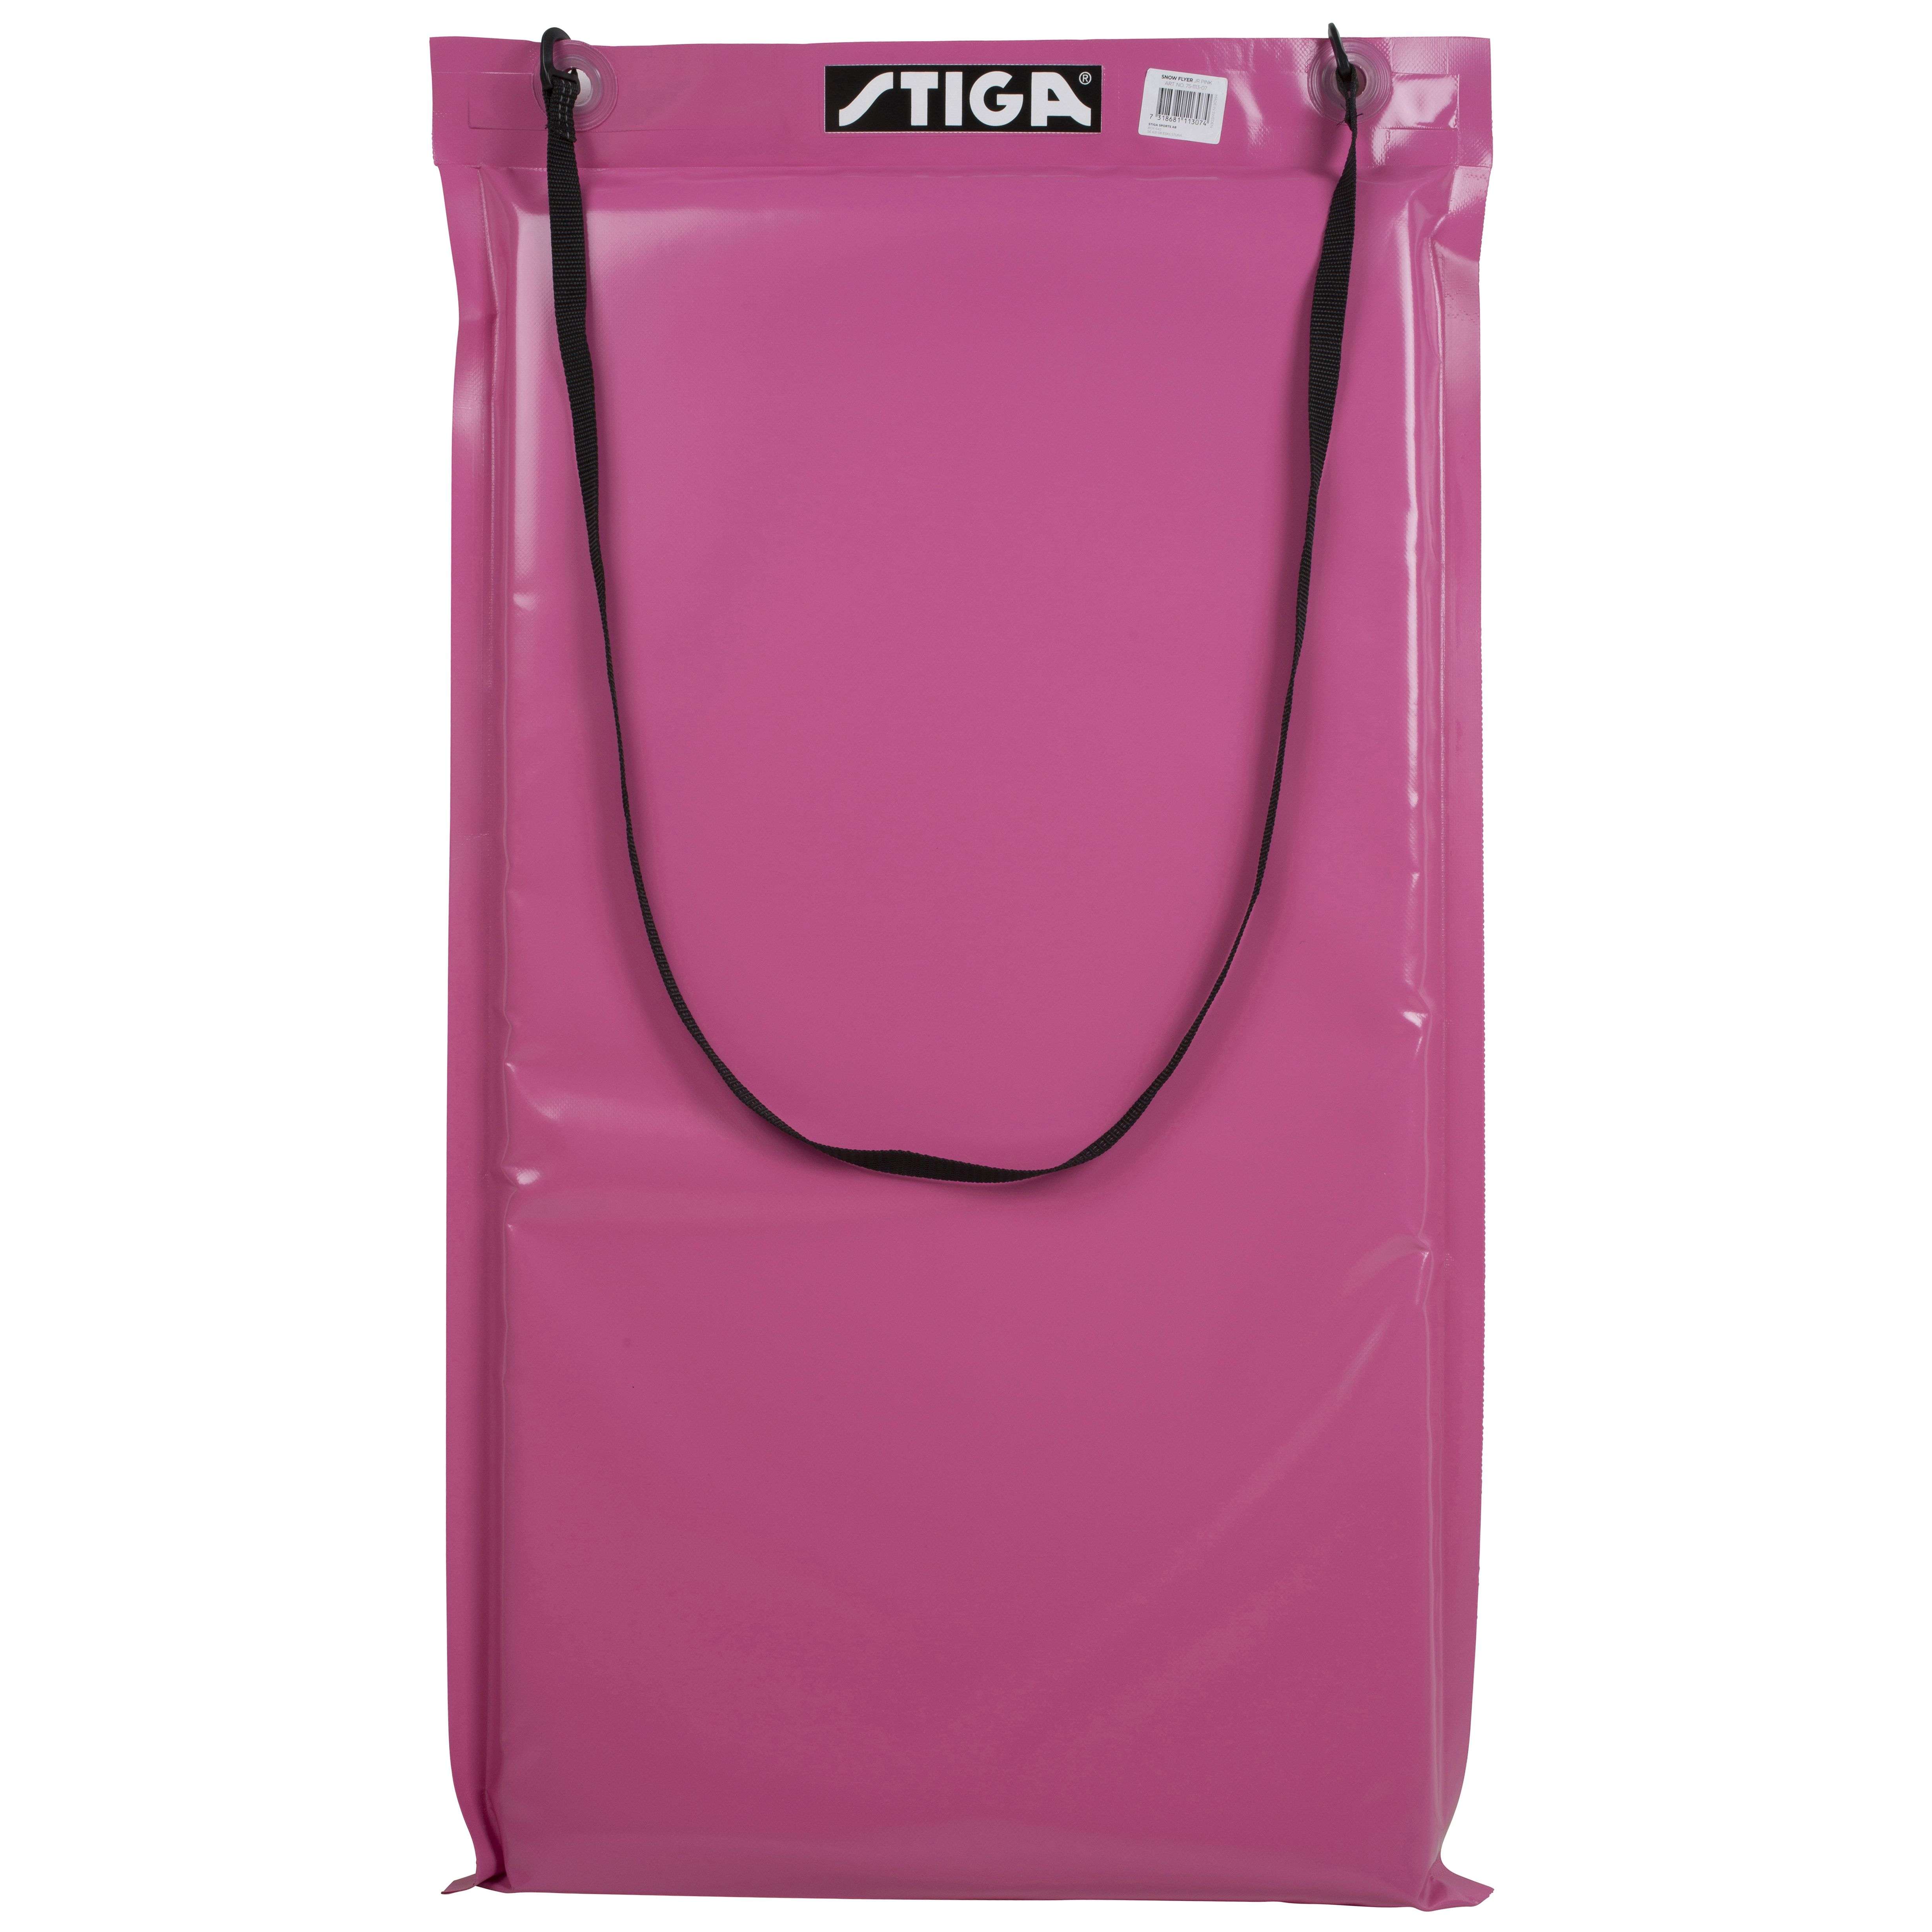 Stiga - Snow Flyer Junior - Pink (100 x 50 x 4 cm)